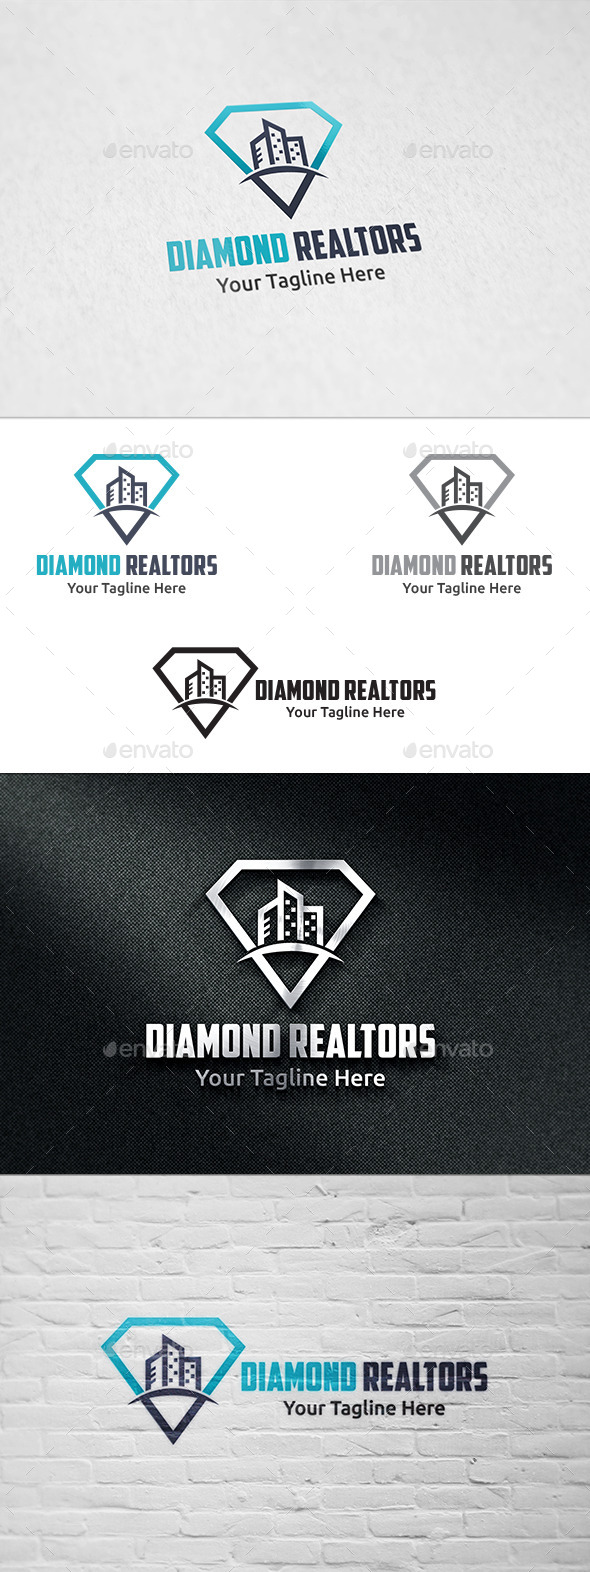 Diamond Realtors - Logo Template